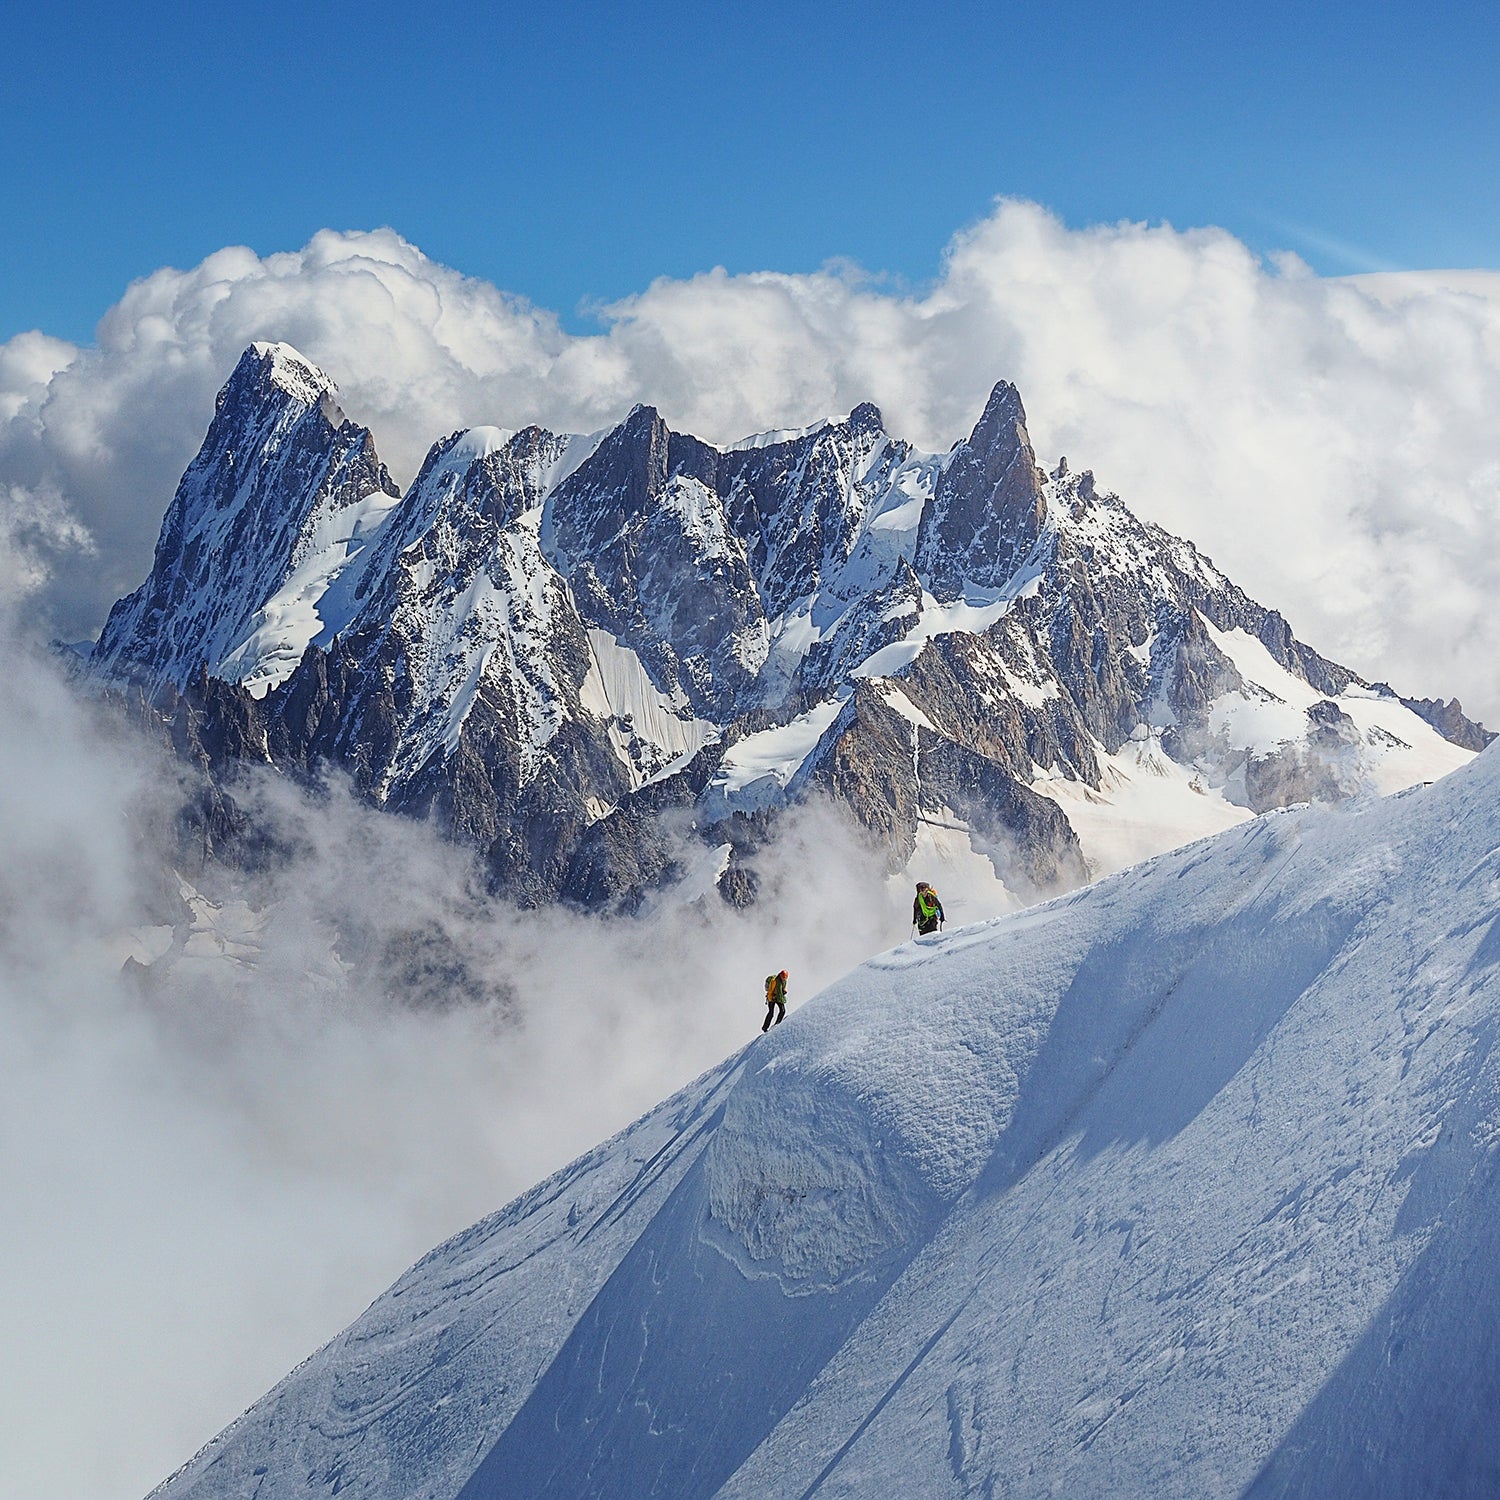 propeller Berg kleding op moederlijk The Deadliest Days on the Alps in Decades - Outside Online